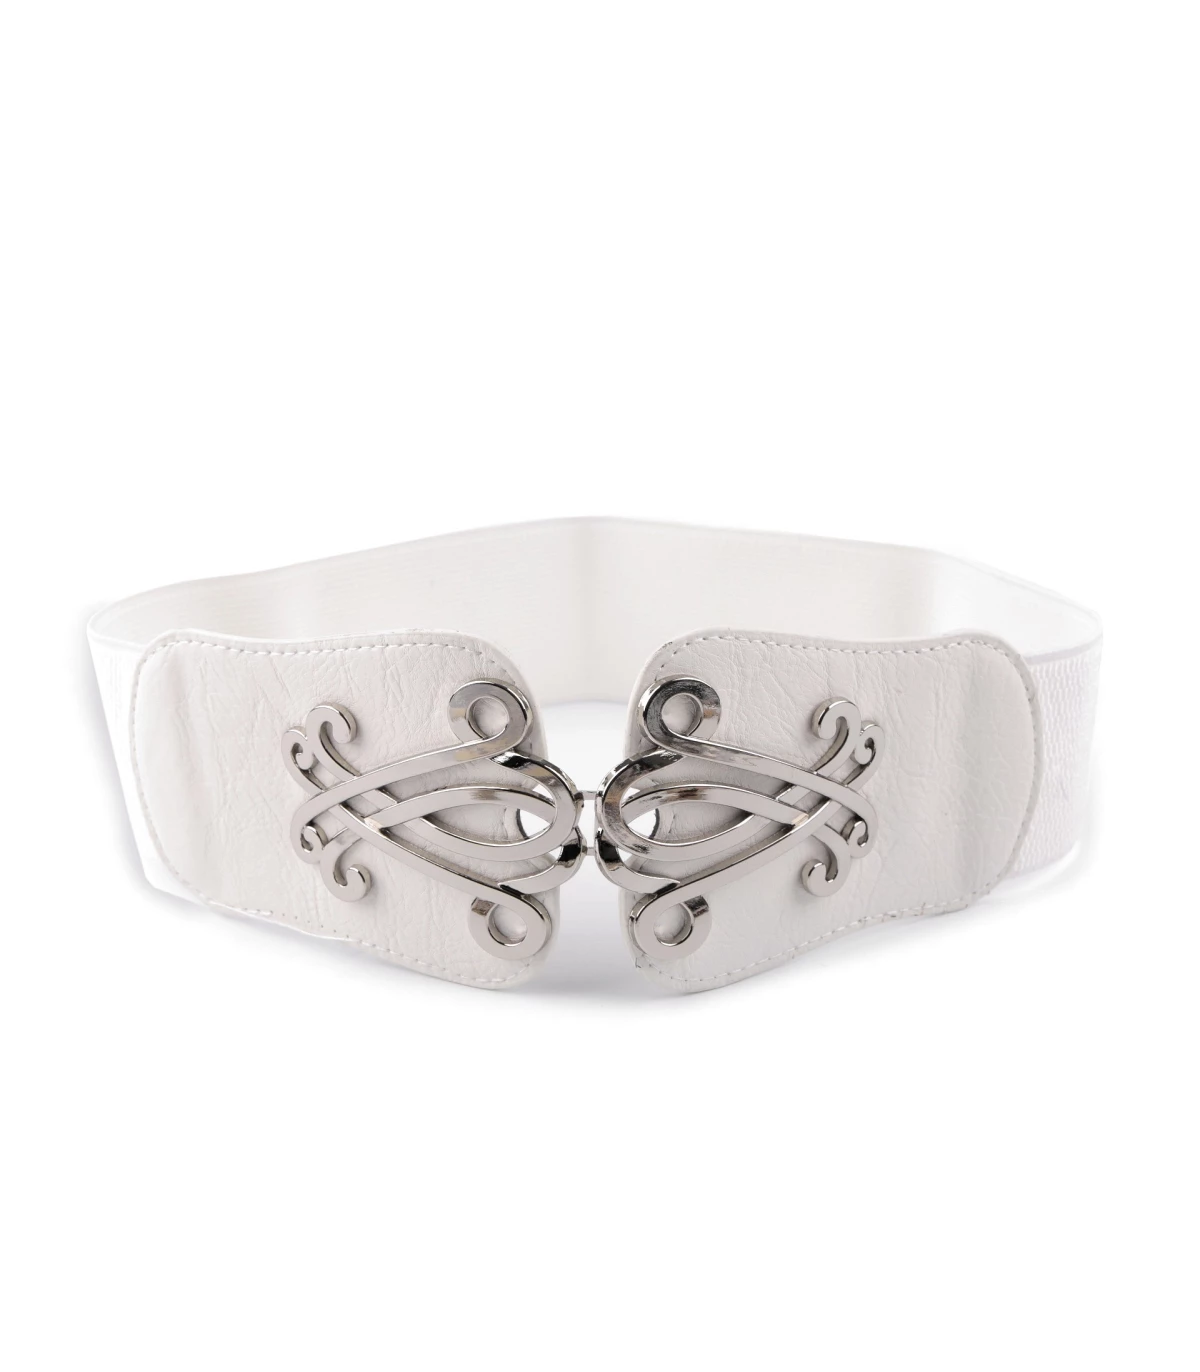 Cinturón elástico mujer - Cinturones - Materiales para tocados, Telas calidad, Diademas, de hilo y mas.